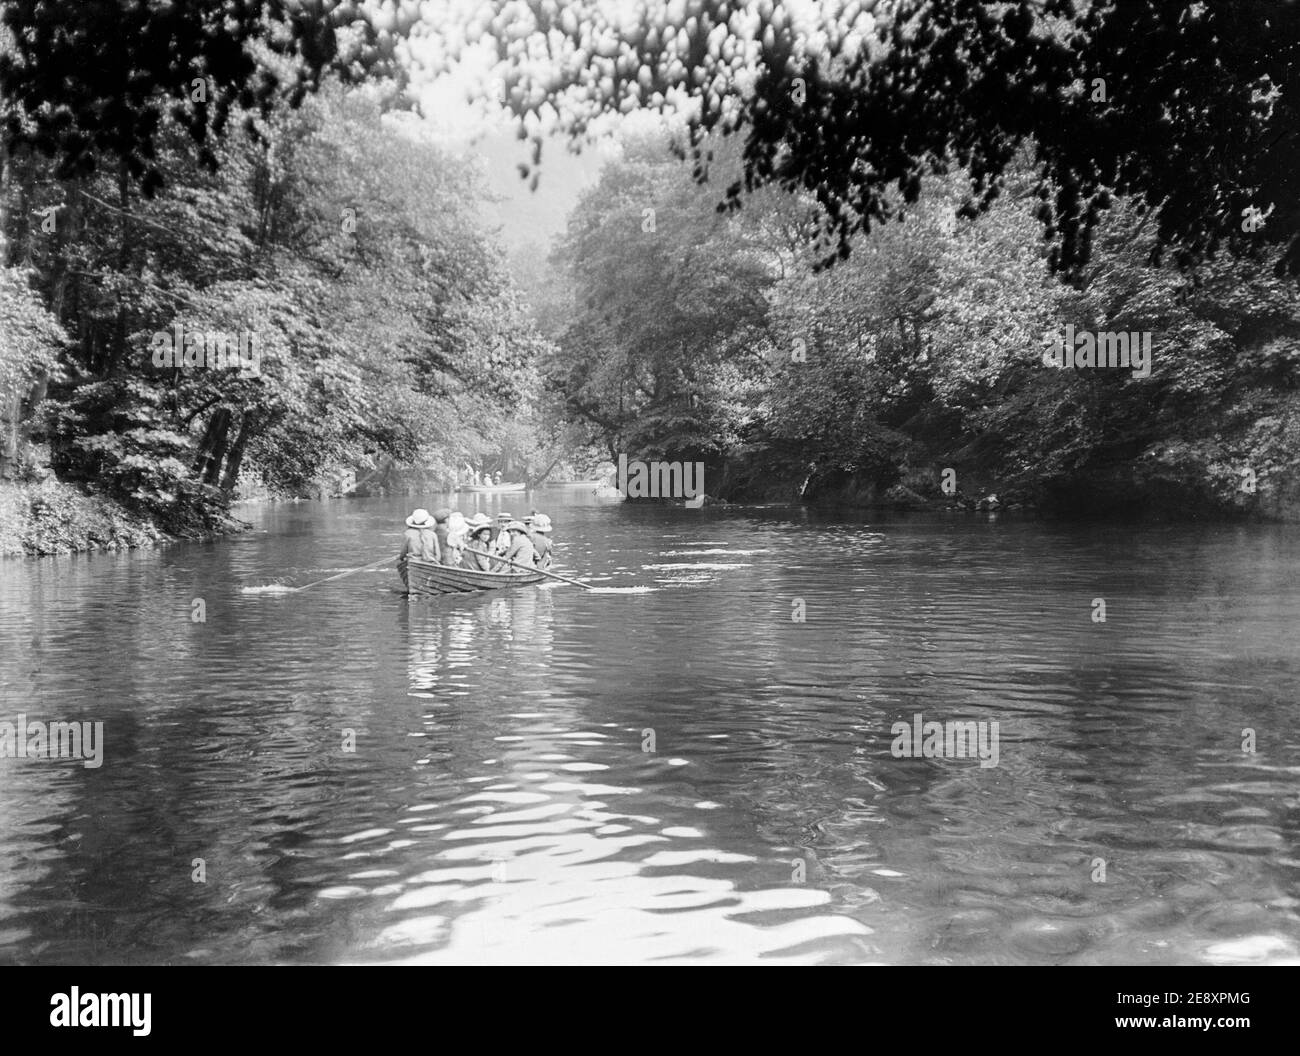 Una fotografia edoardiana in bianco e nero all'inizio del ventesimo secolo che mostra un gruppo di donne e ragazze in una barca a remi su un fiume in Inghilterra. Un uomo sta girovagando la barca. Foto Stock